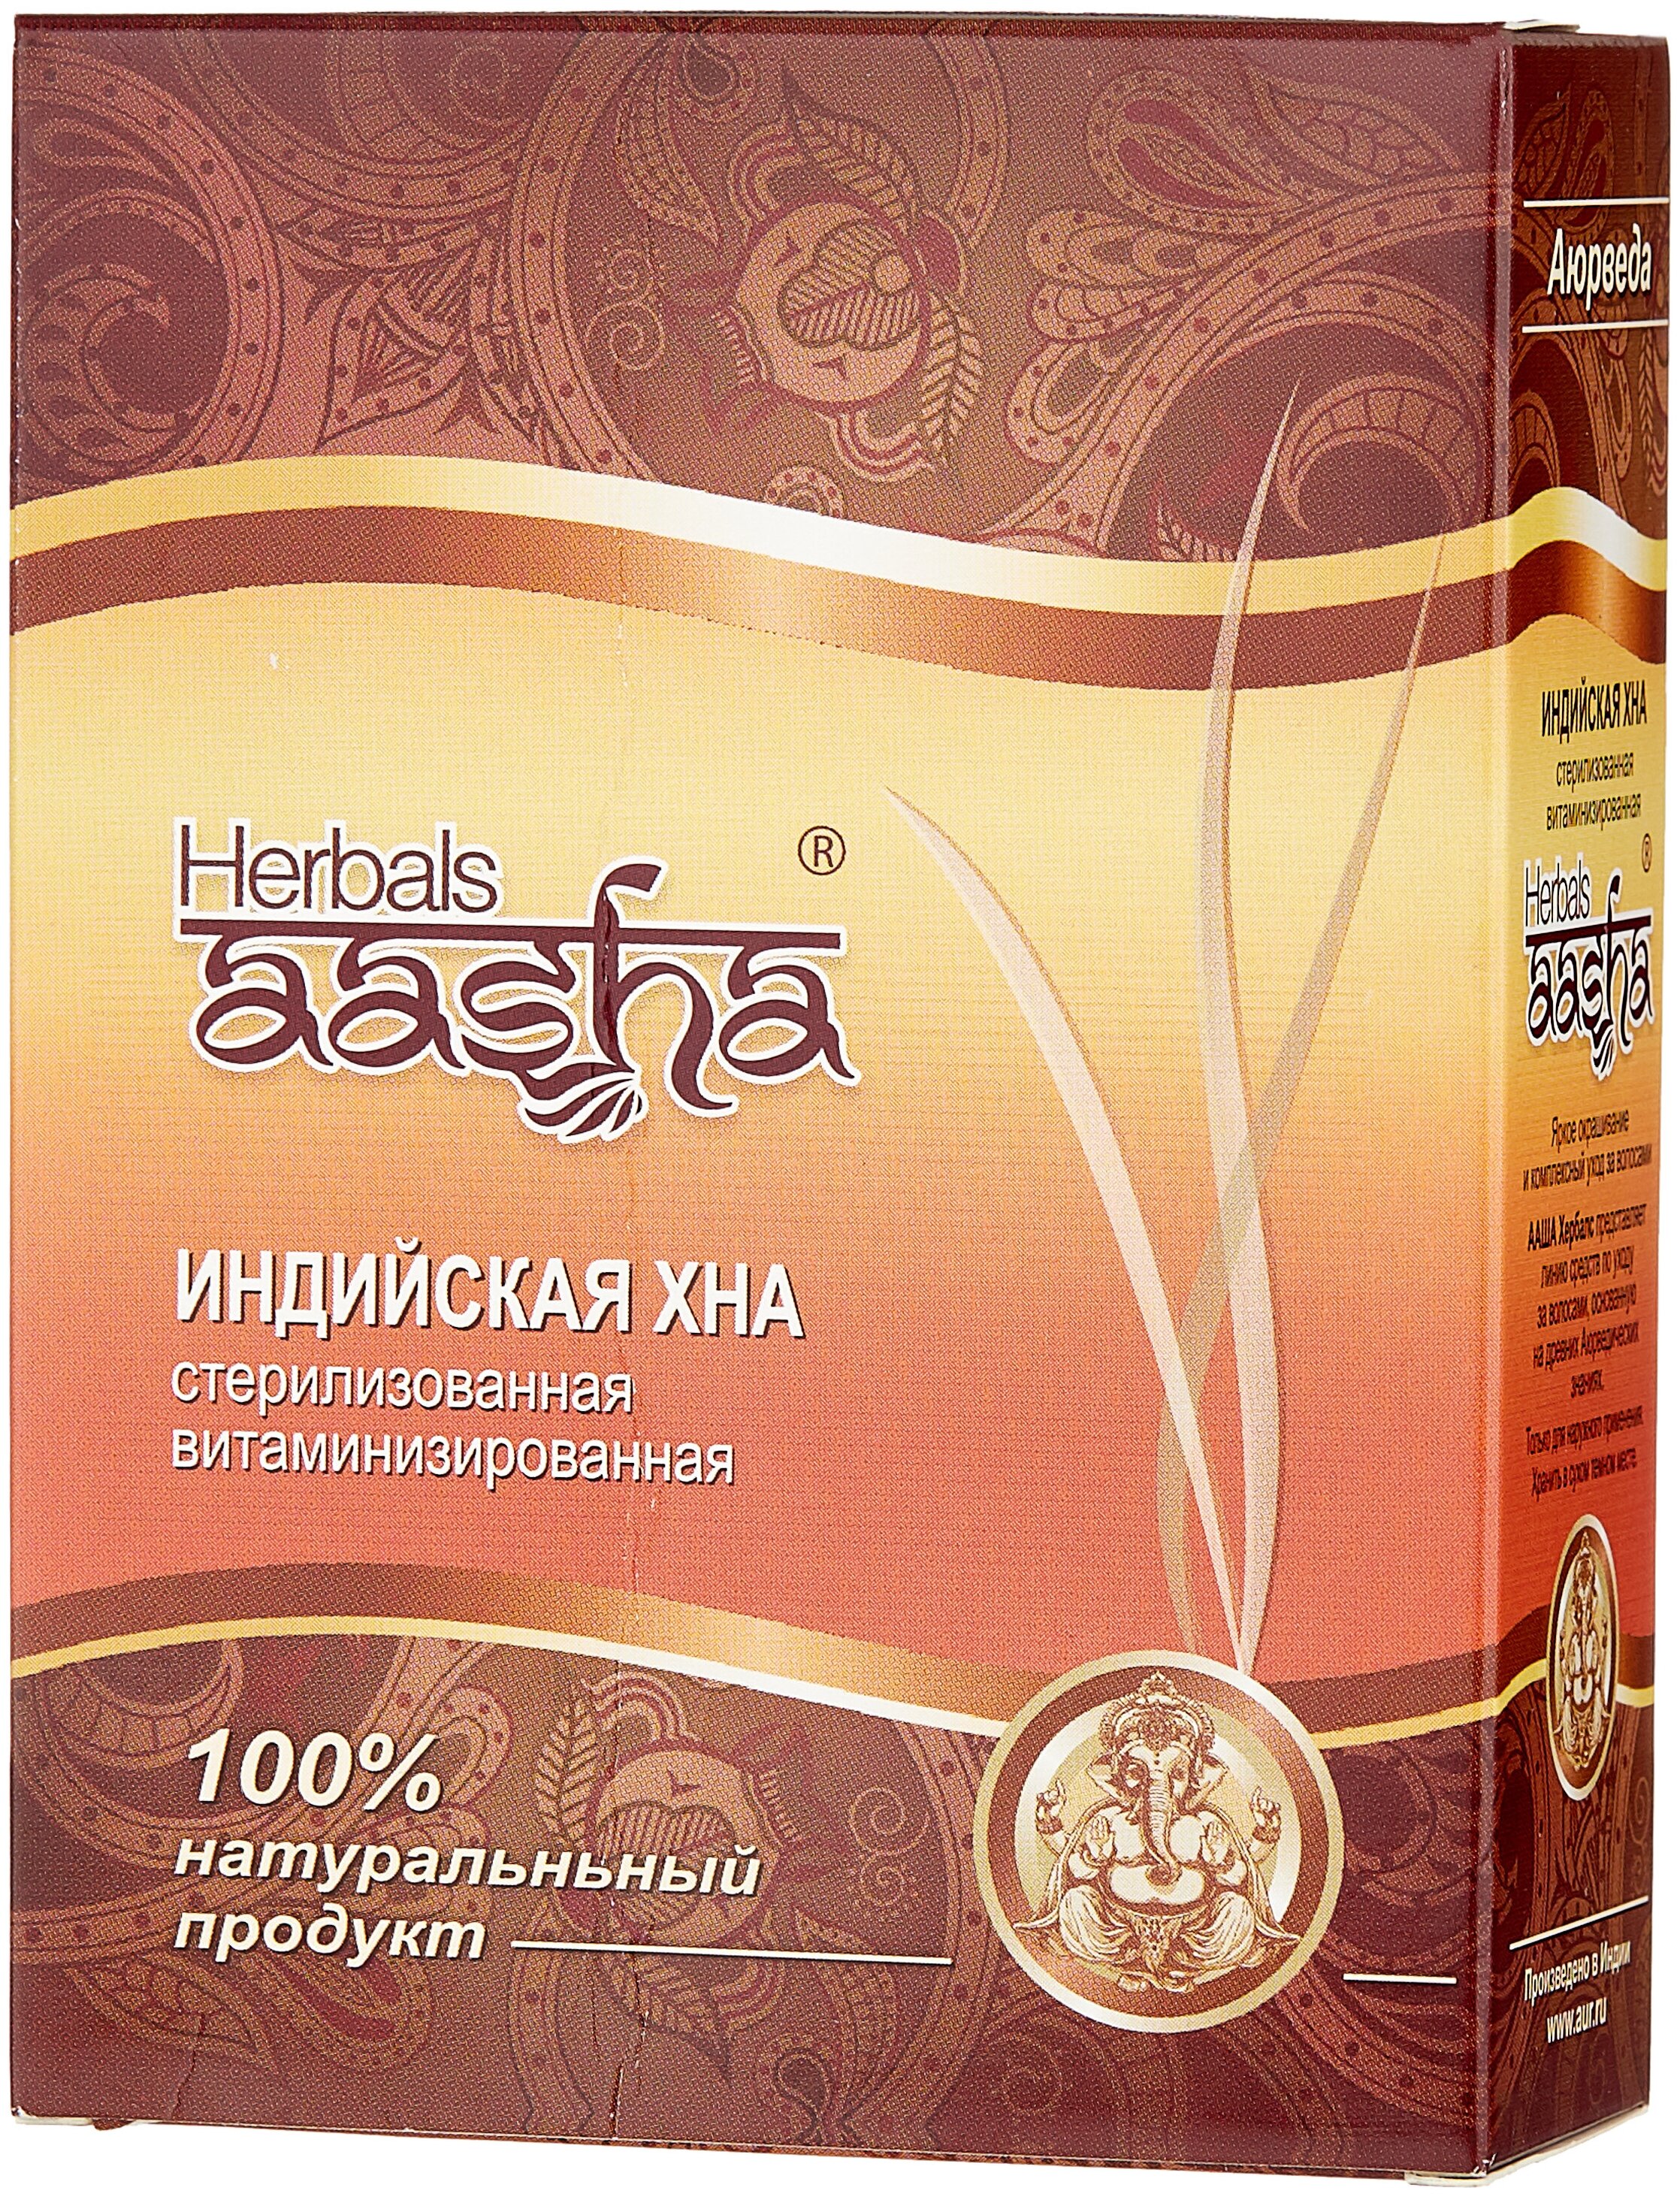 Aasha Herbals "Индийская стерилизованная витаминизированная" - без парабенов